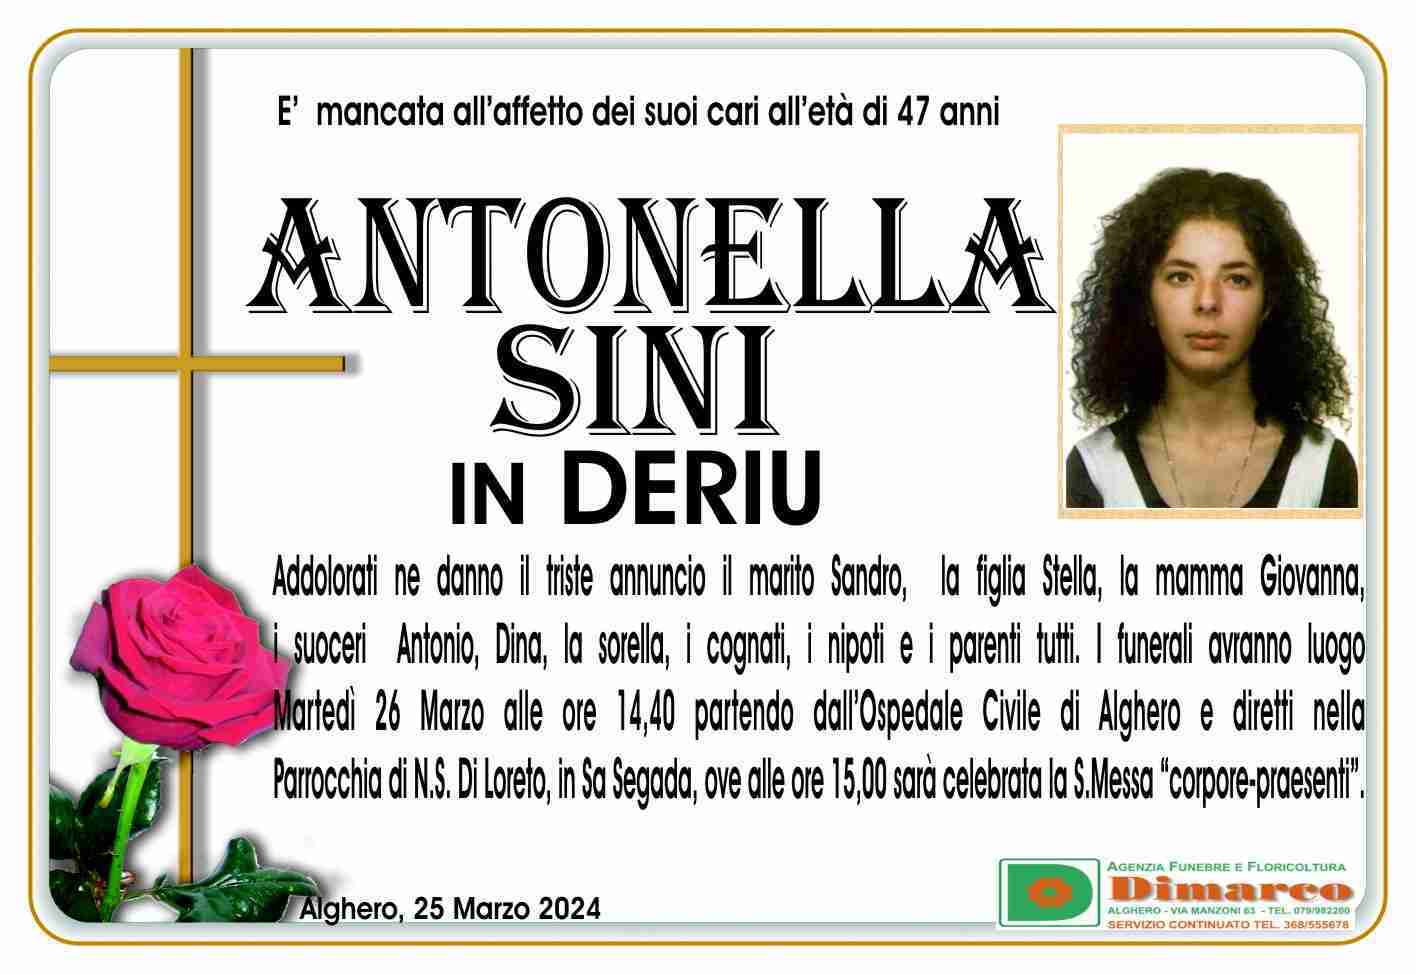 Antonella Sini in Deriu